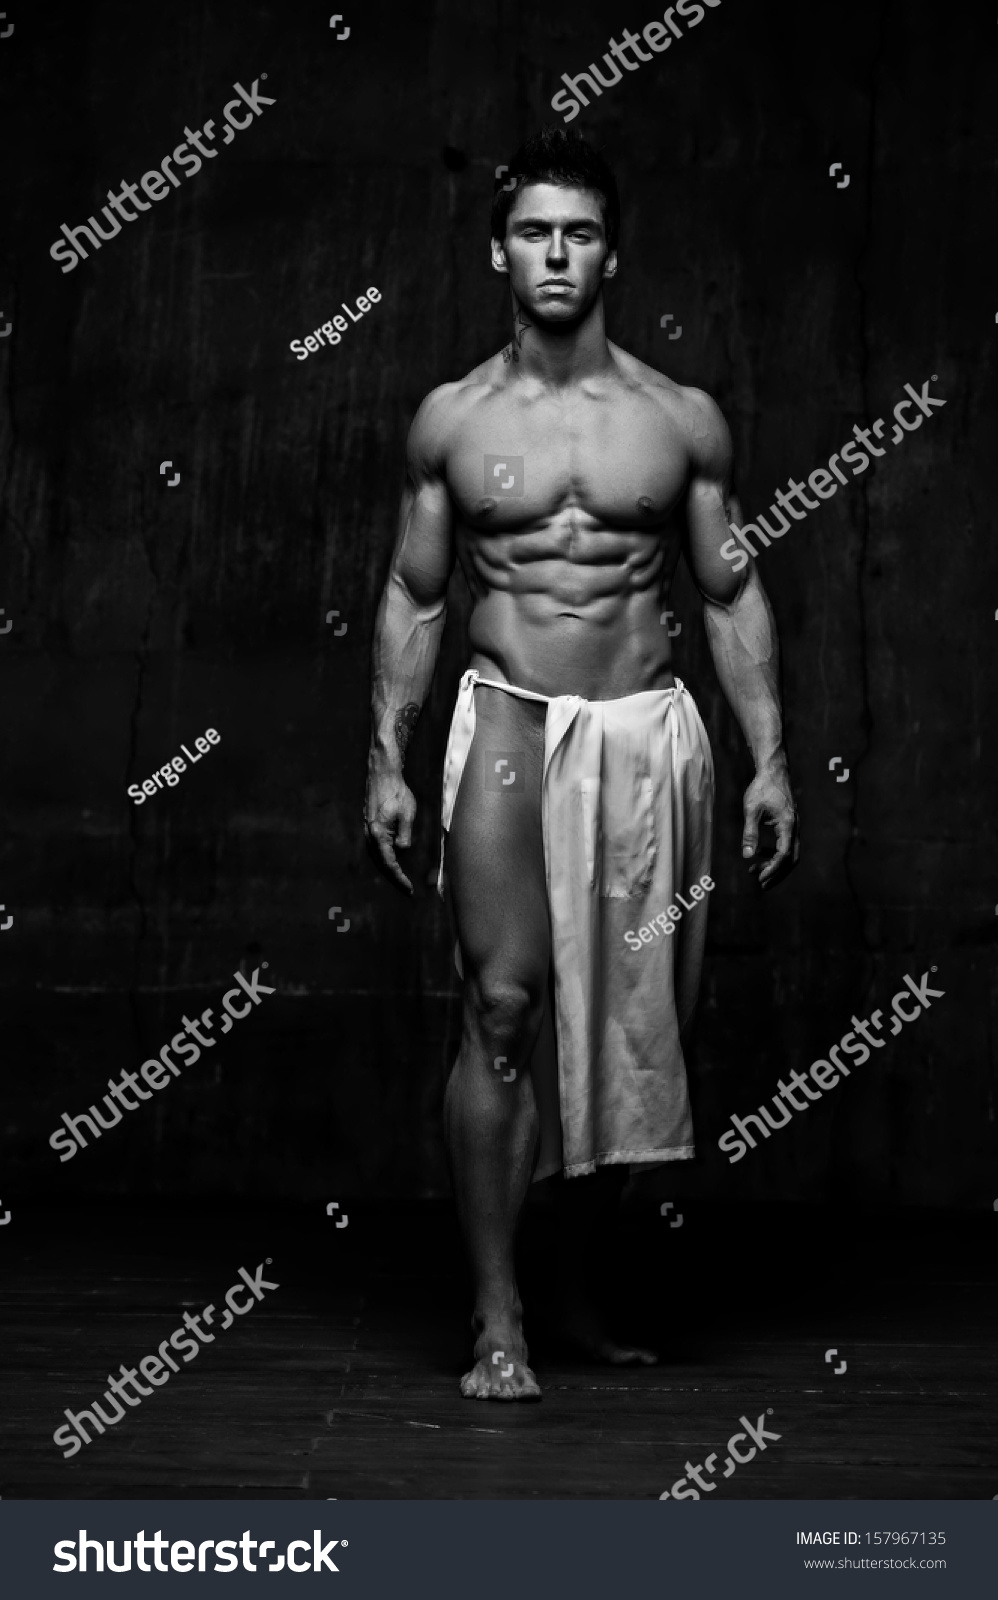 Naked Male Model Against Black Background Stock Photo Shutterstock